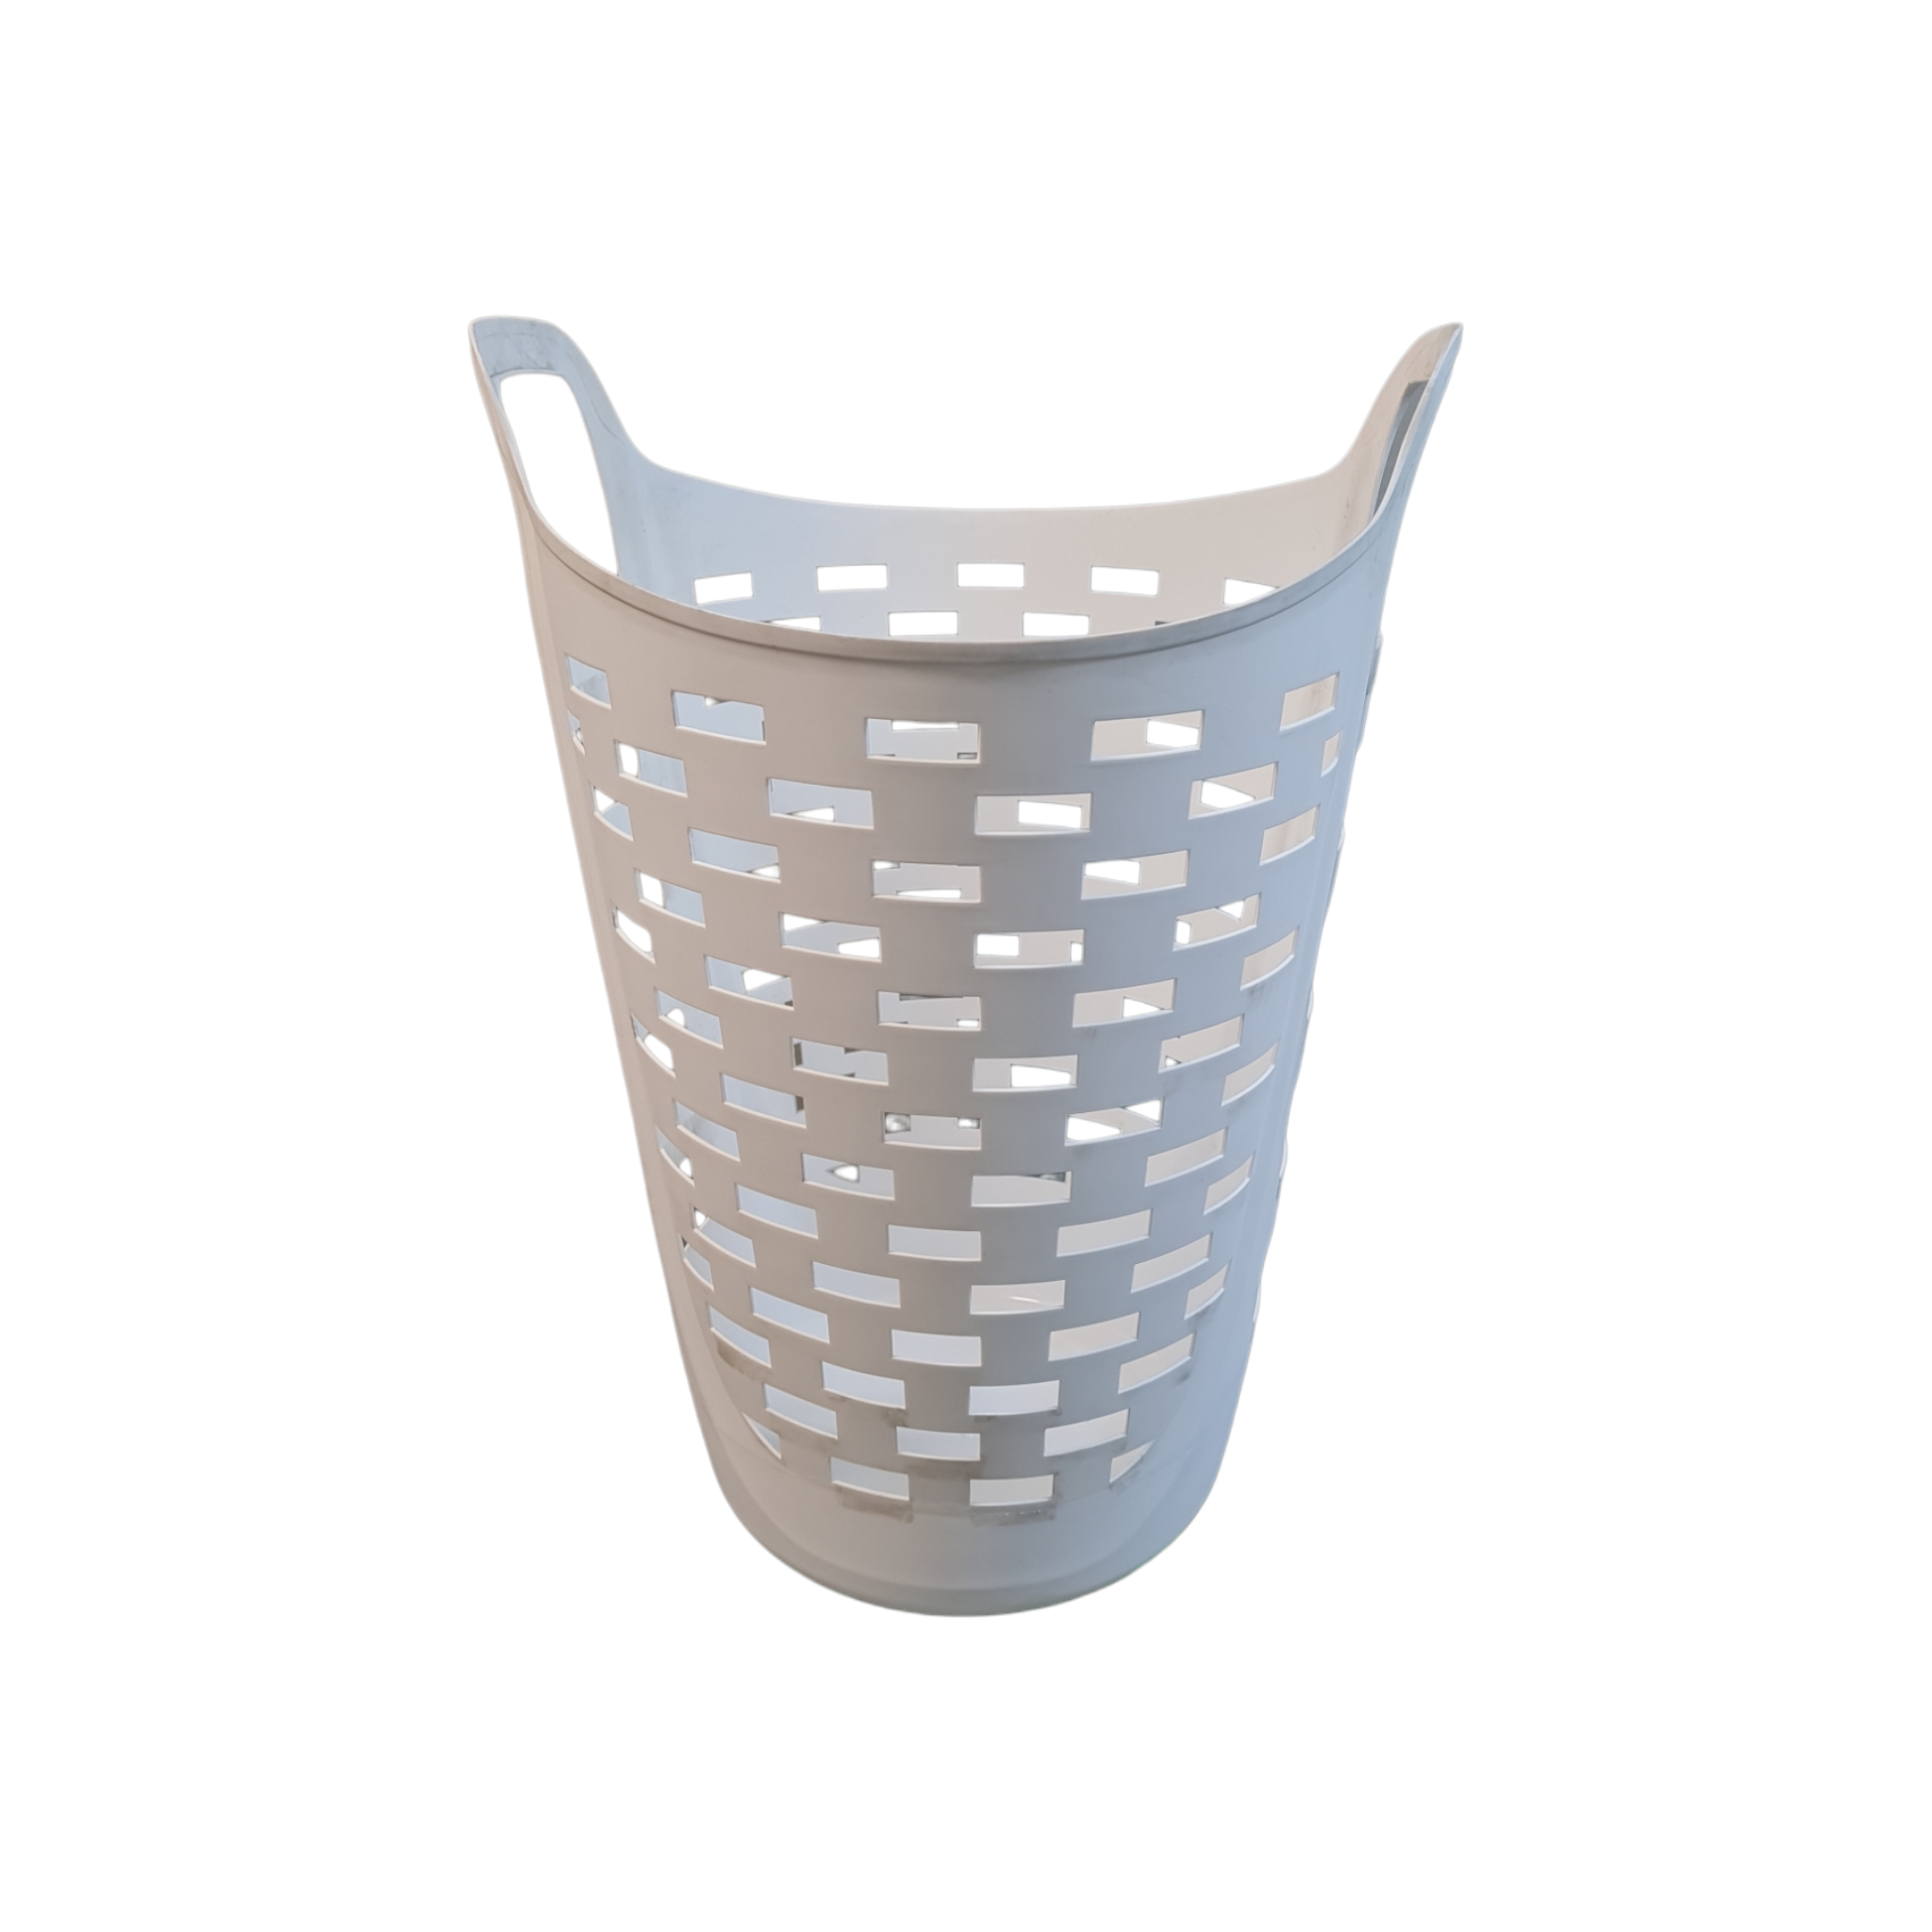 Plastic Laundry Storage Flexible Carry Basket Each 459